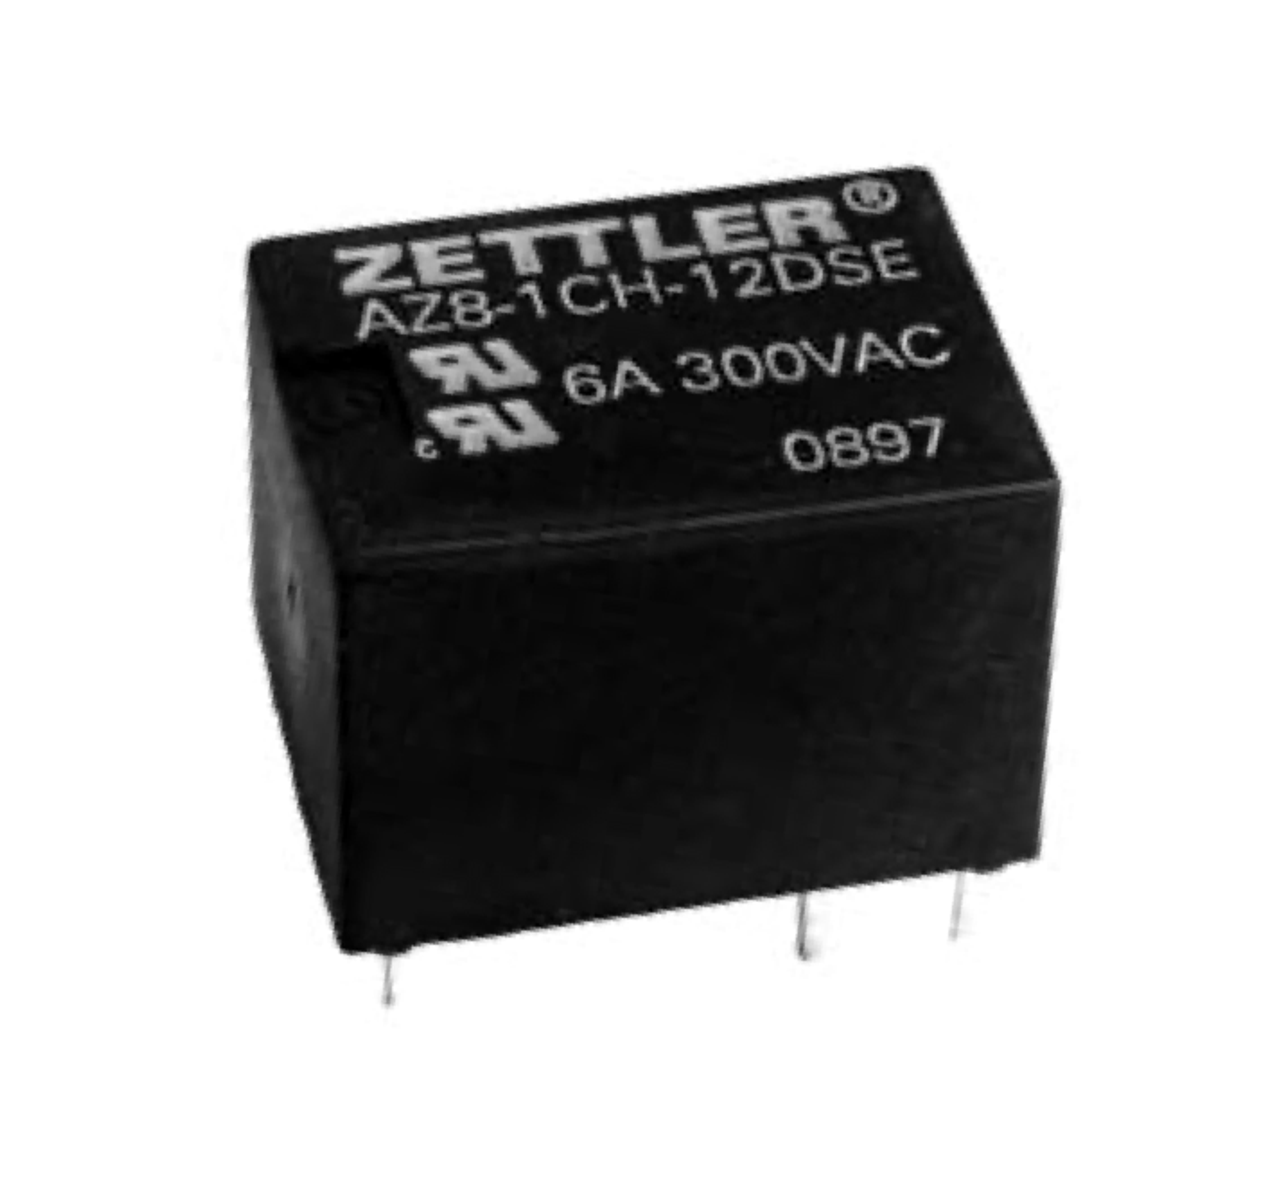 American Zettler AZ8-1C-48DS Power Relay